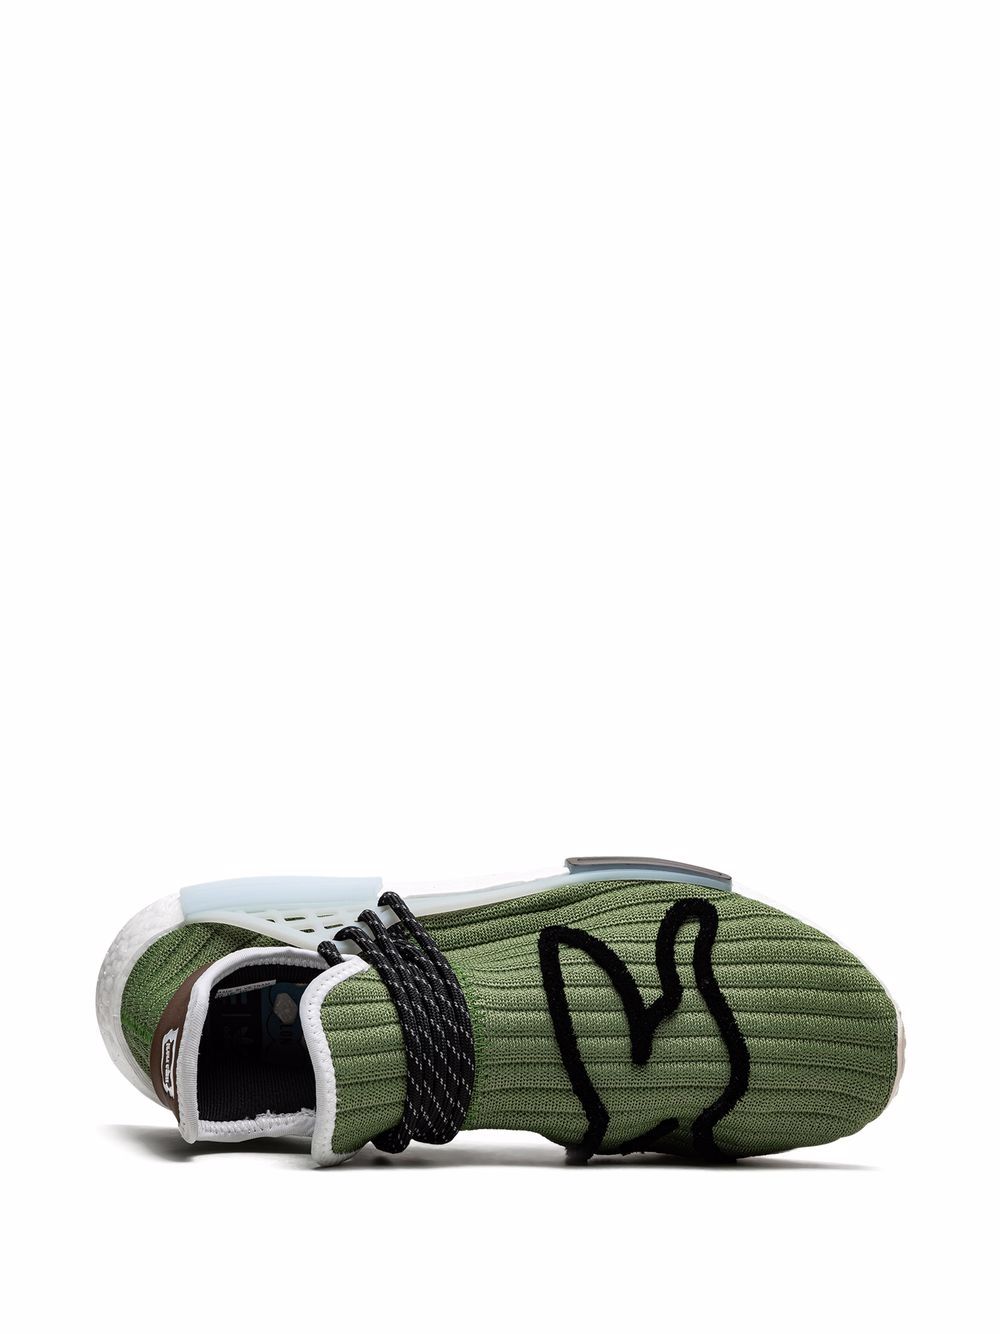 Adidas NMD Hu Pharrell x BBC 'Running Dog' 11 Custom / Cwhite / Brown